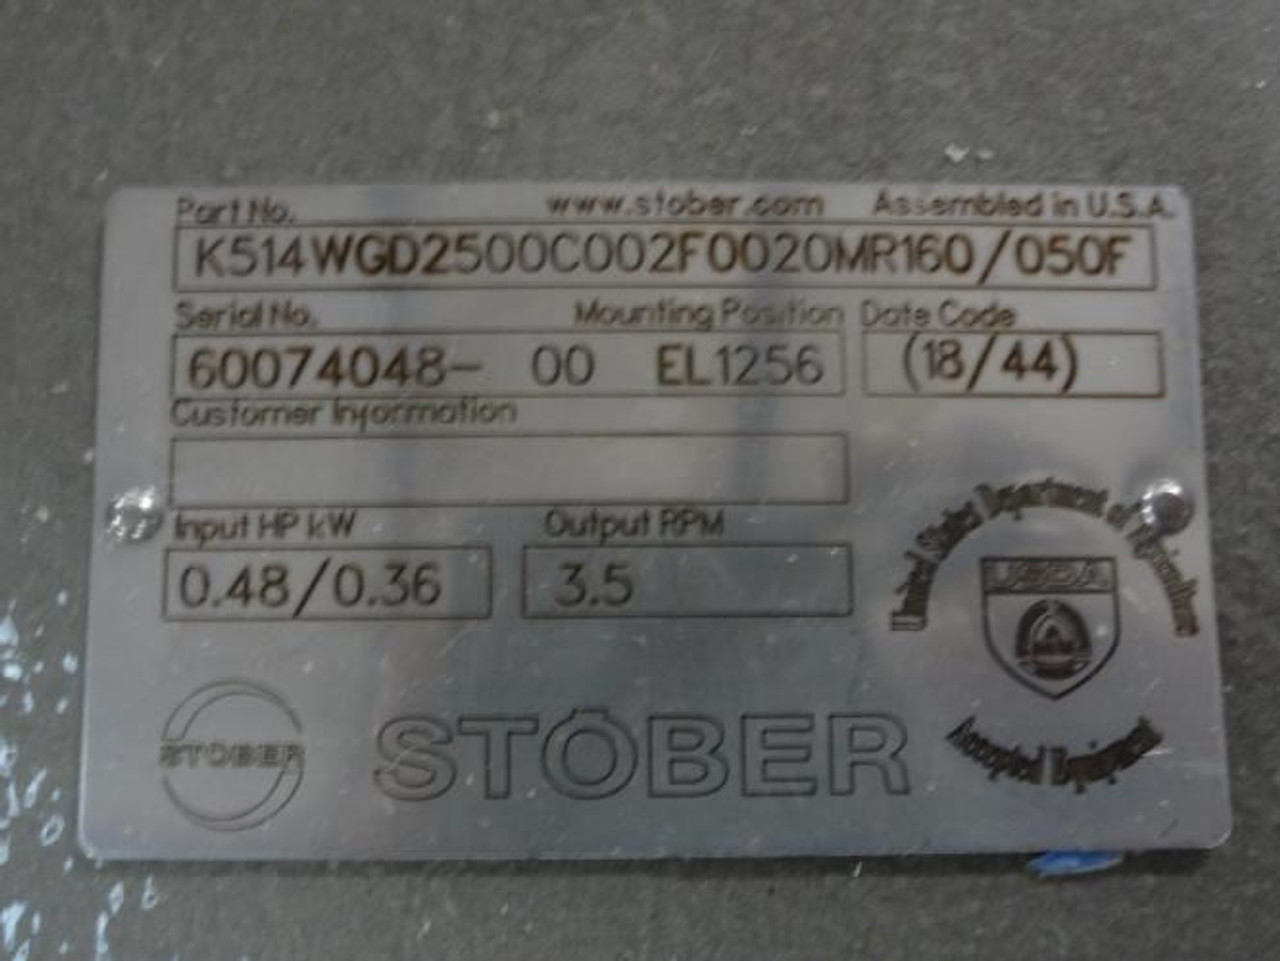 Stober K514WGD2500C002F0020MR160/050F; Gearbox; 0.48Hp/0.36kW